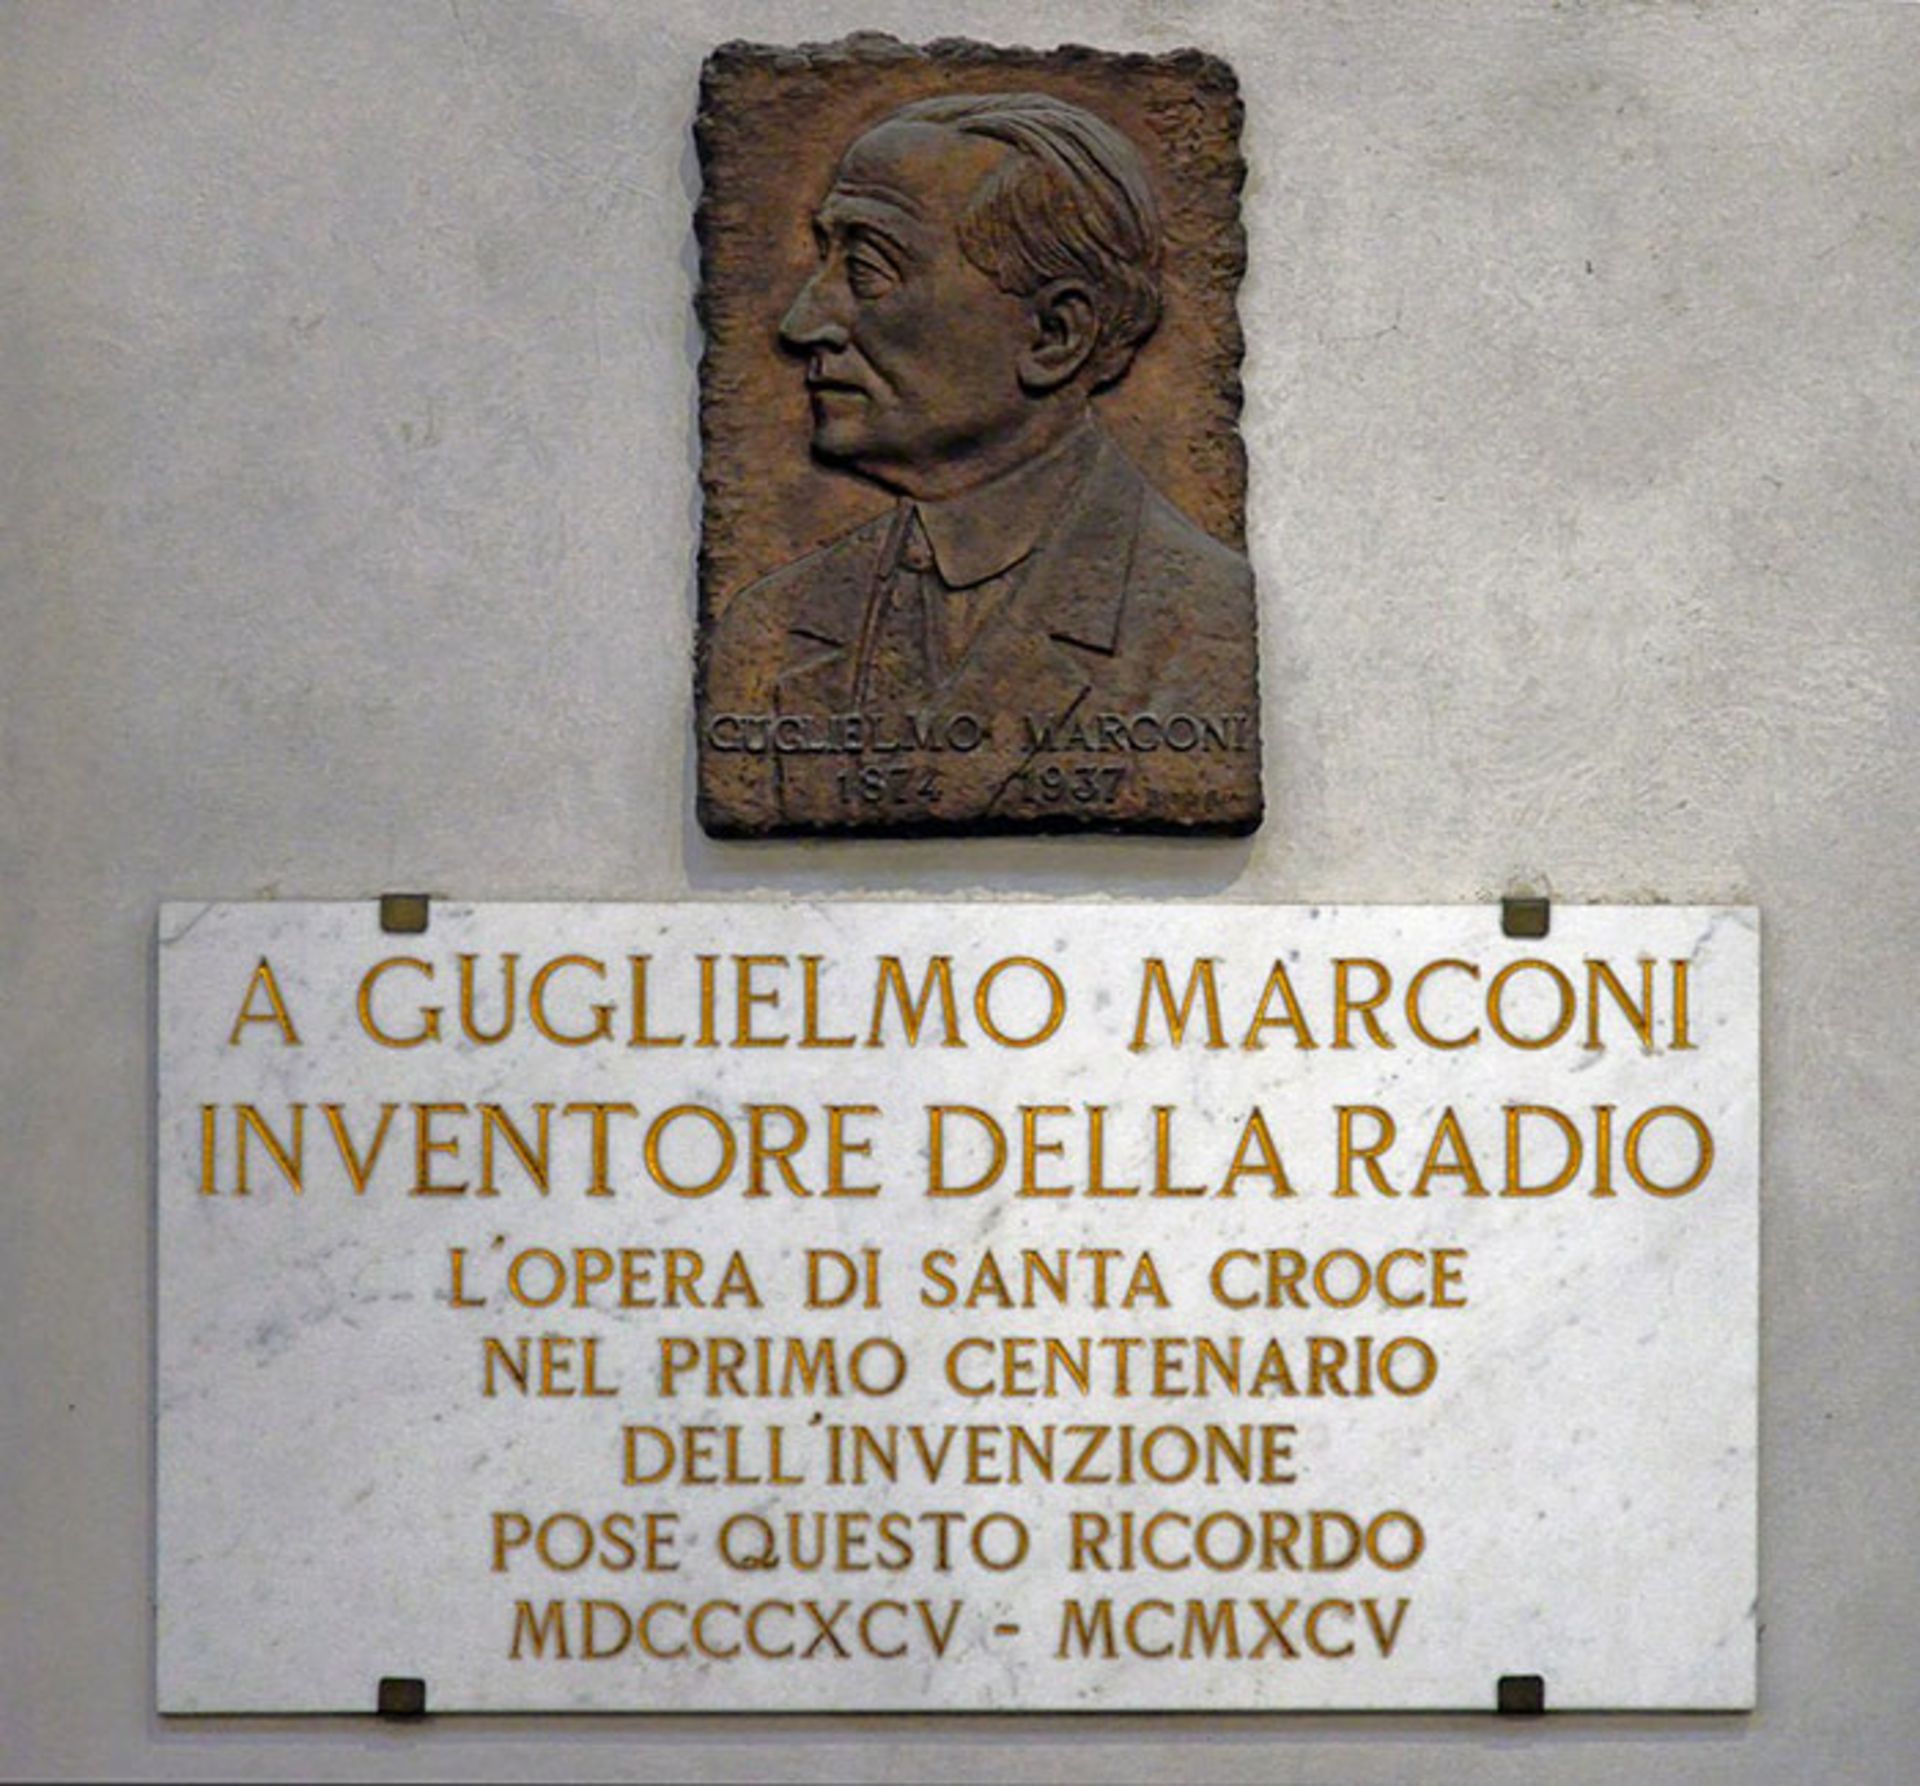 گولیلمو مارکونی / Guglielmo Markoni